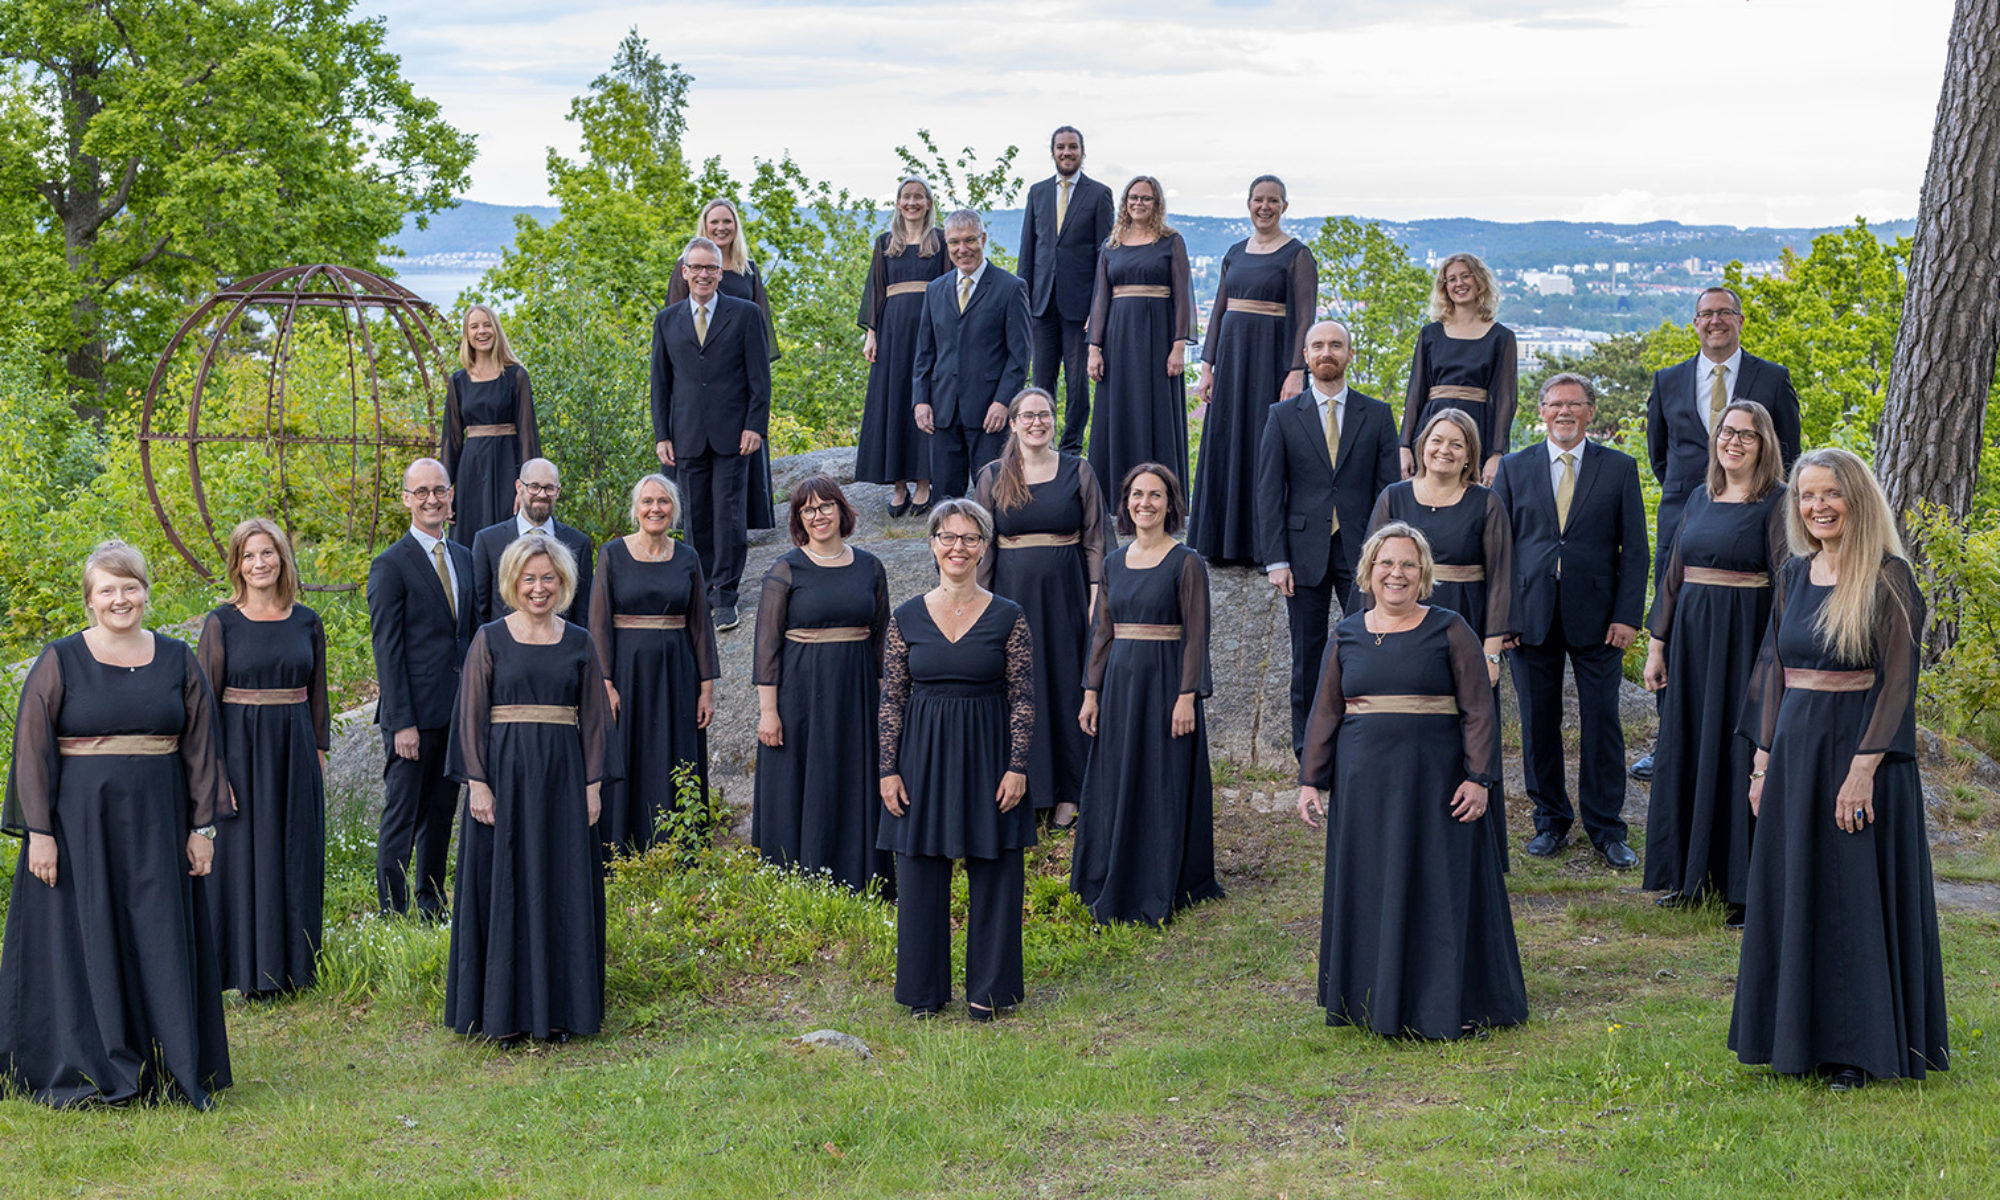 Ett 20-tal personer klädda i svarta enhetliga kläder står uppställda på olika nivåer omgivna av grönska mot en utsikt över Jönköping